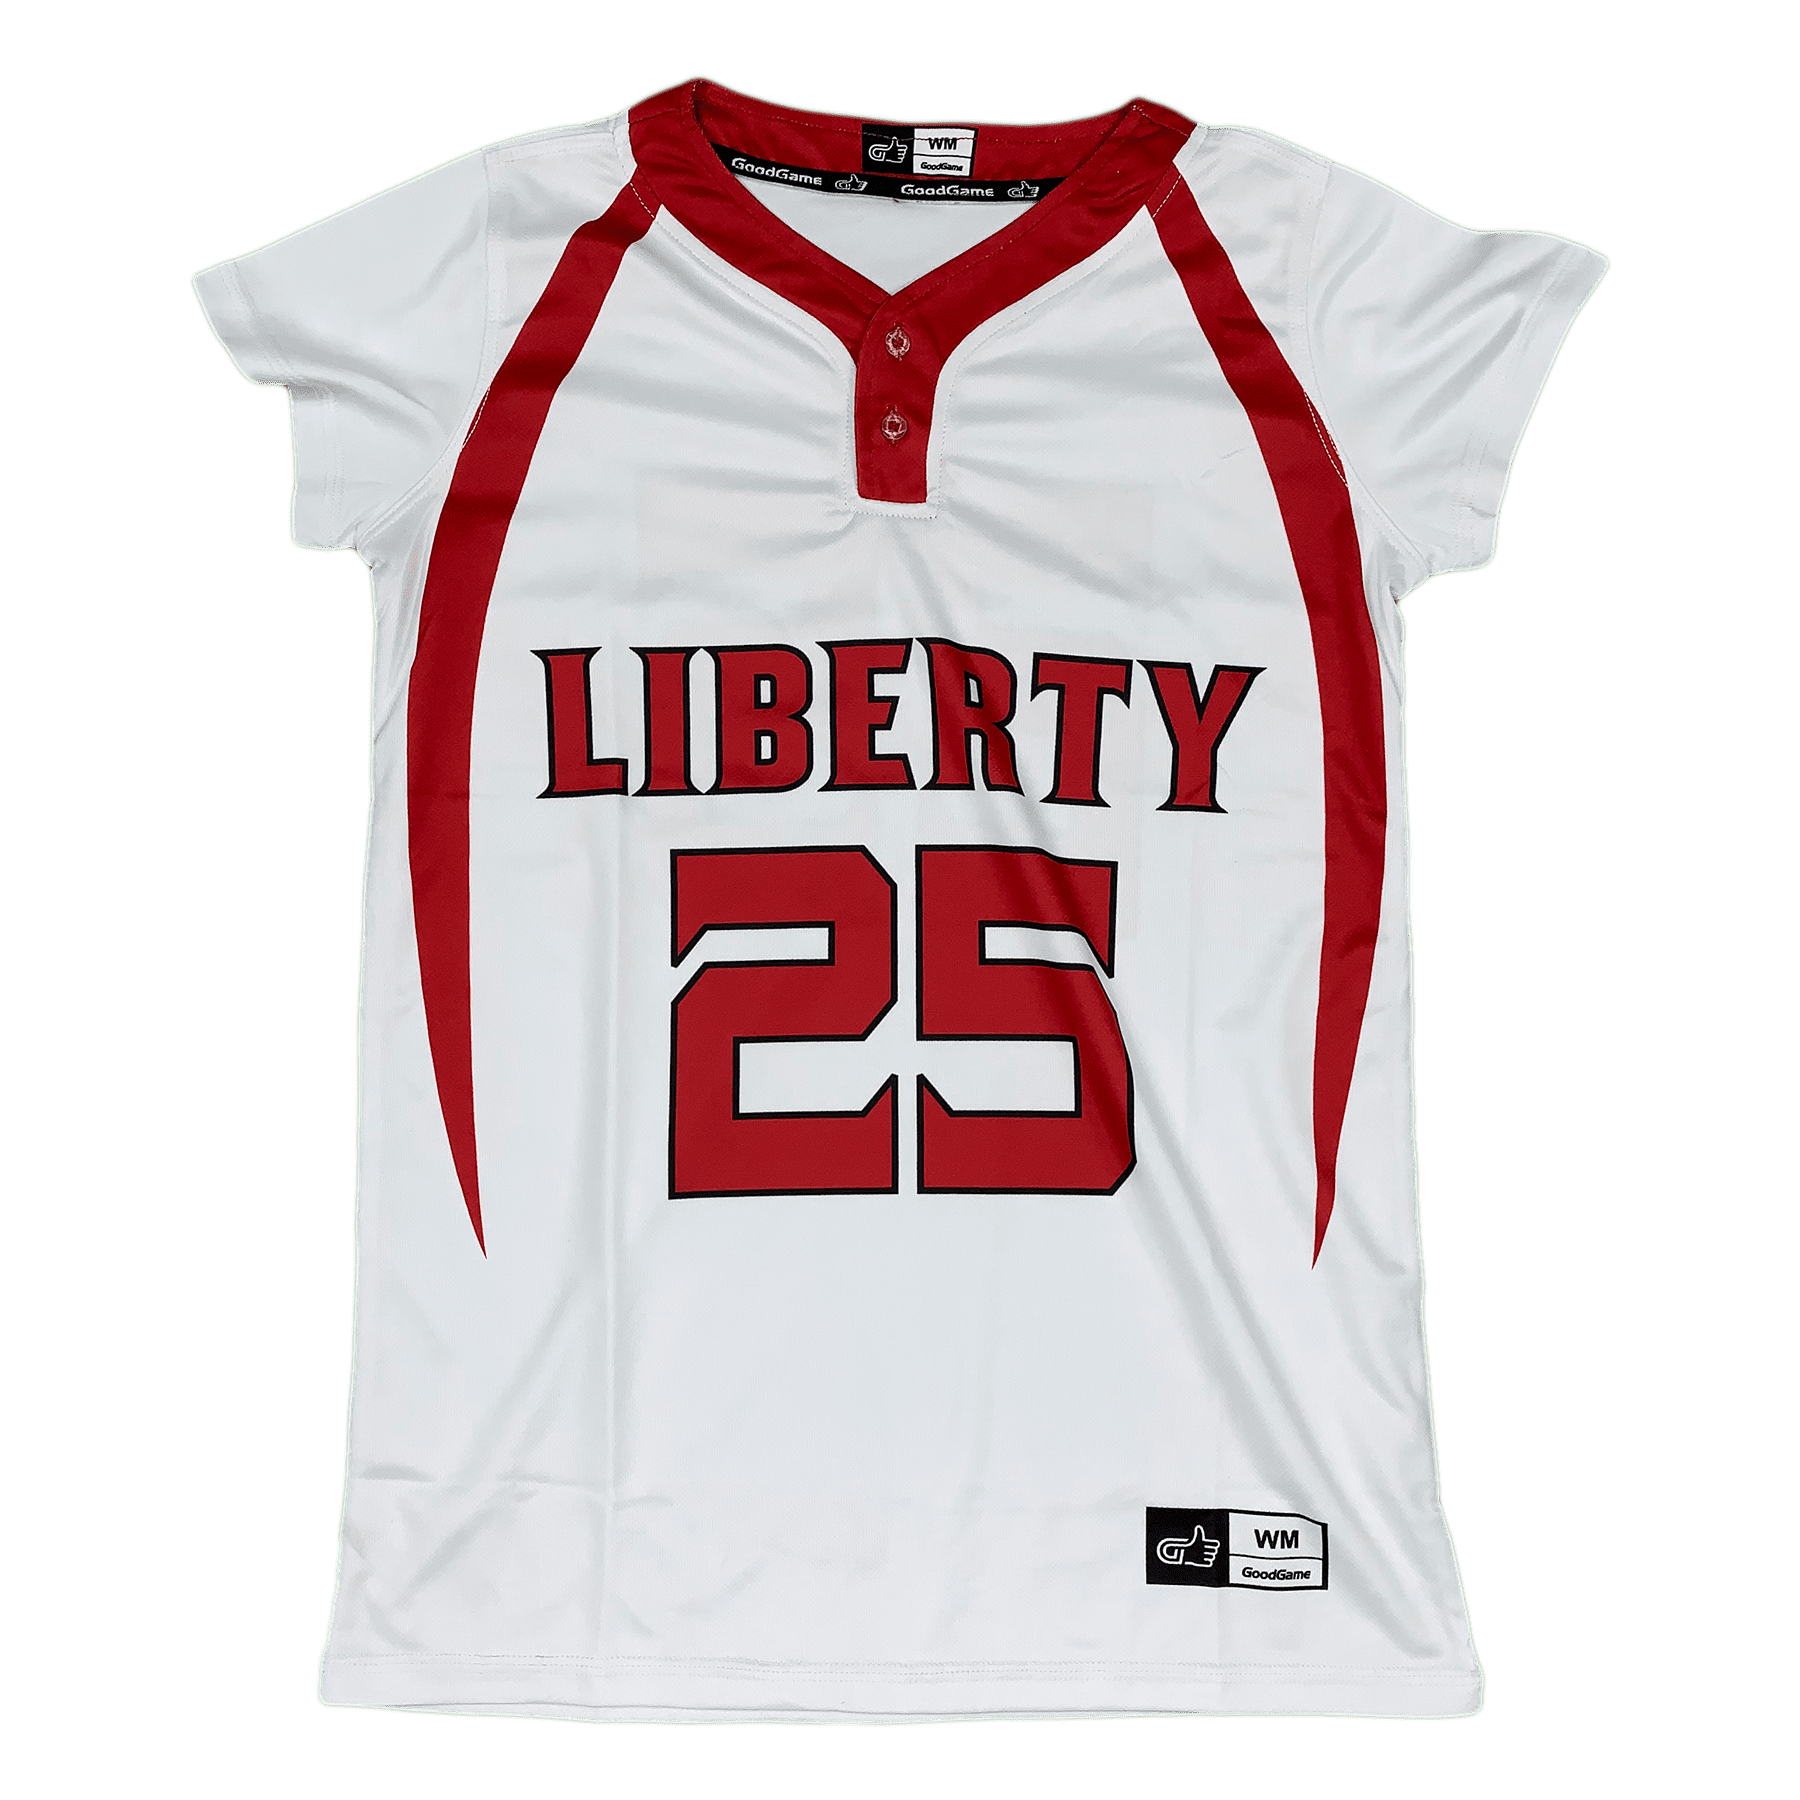 Liberty Softball Jersey